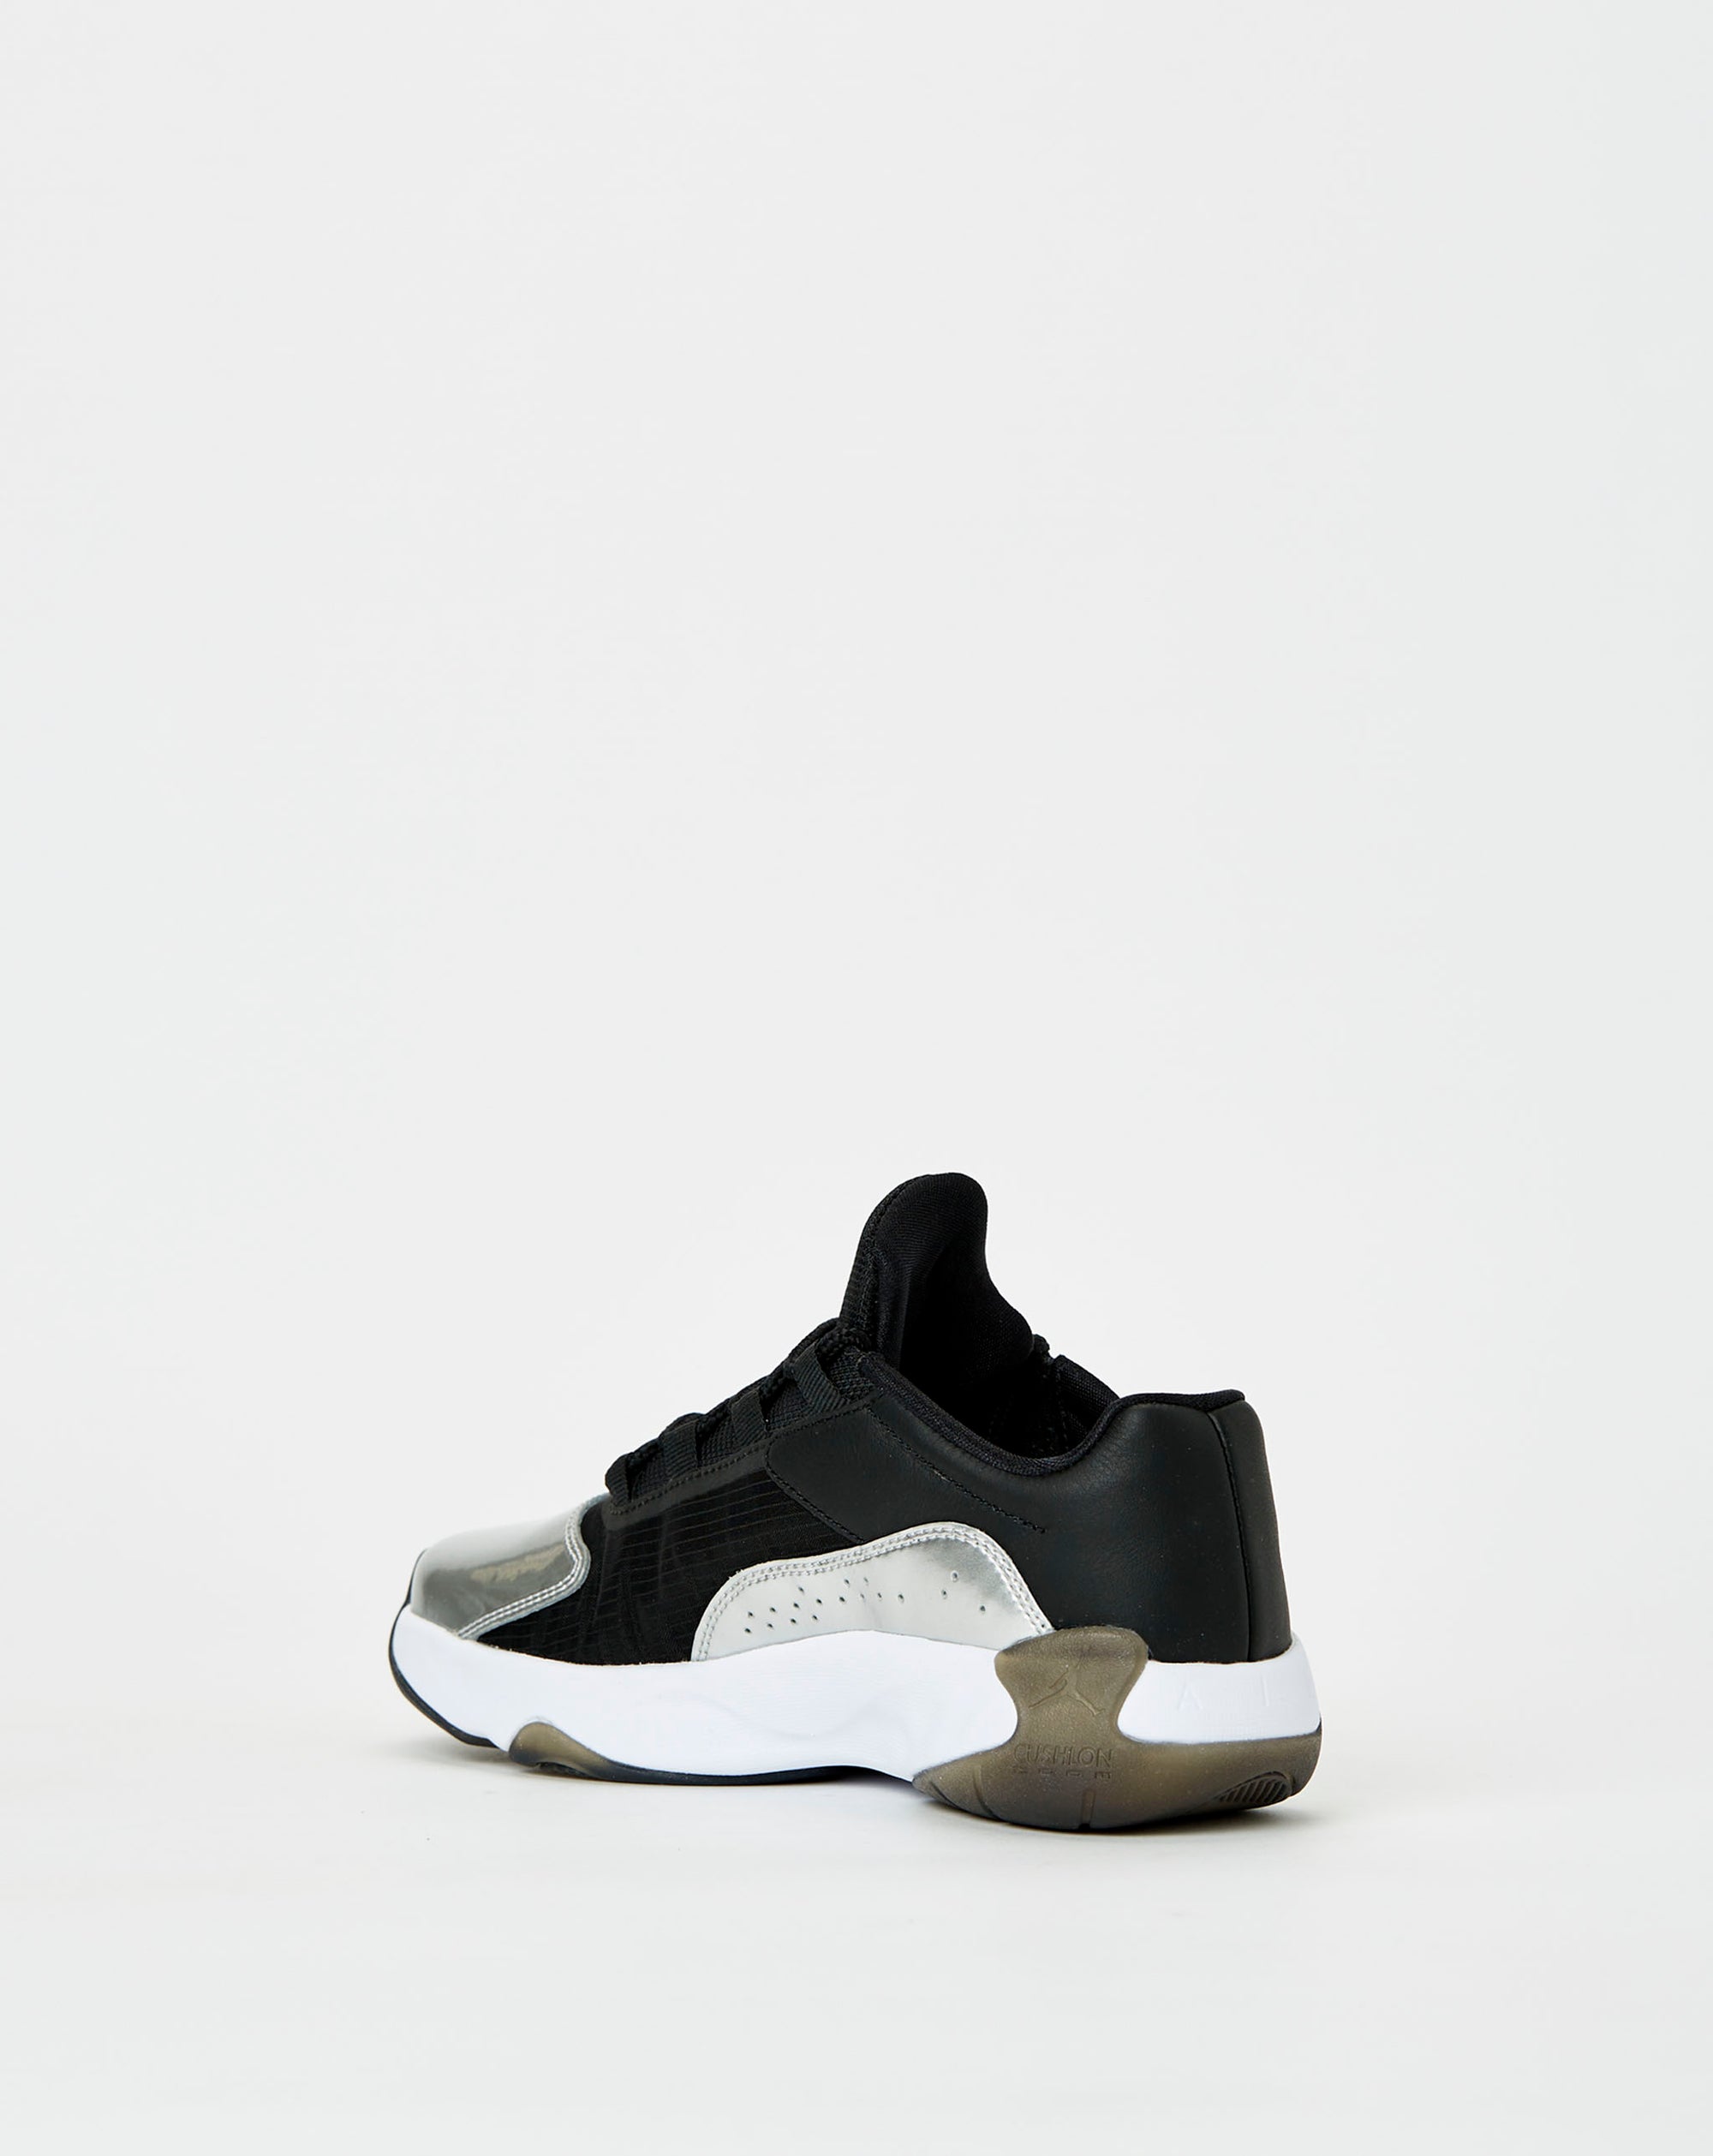 Nike Air Jordan 11 CMFT Low White Black Metallic Silver Women's Sizes  DV2629-001